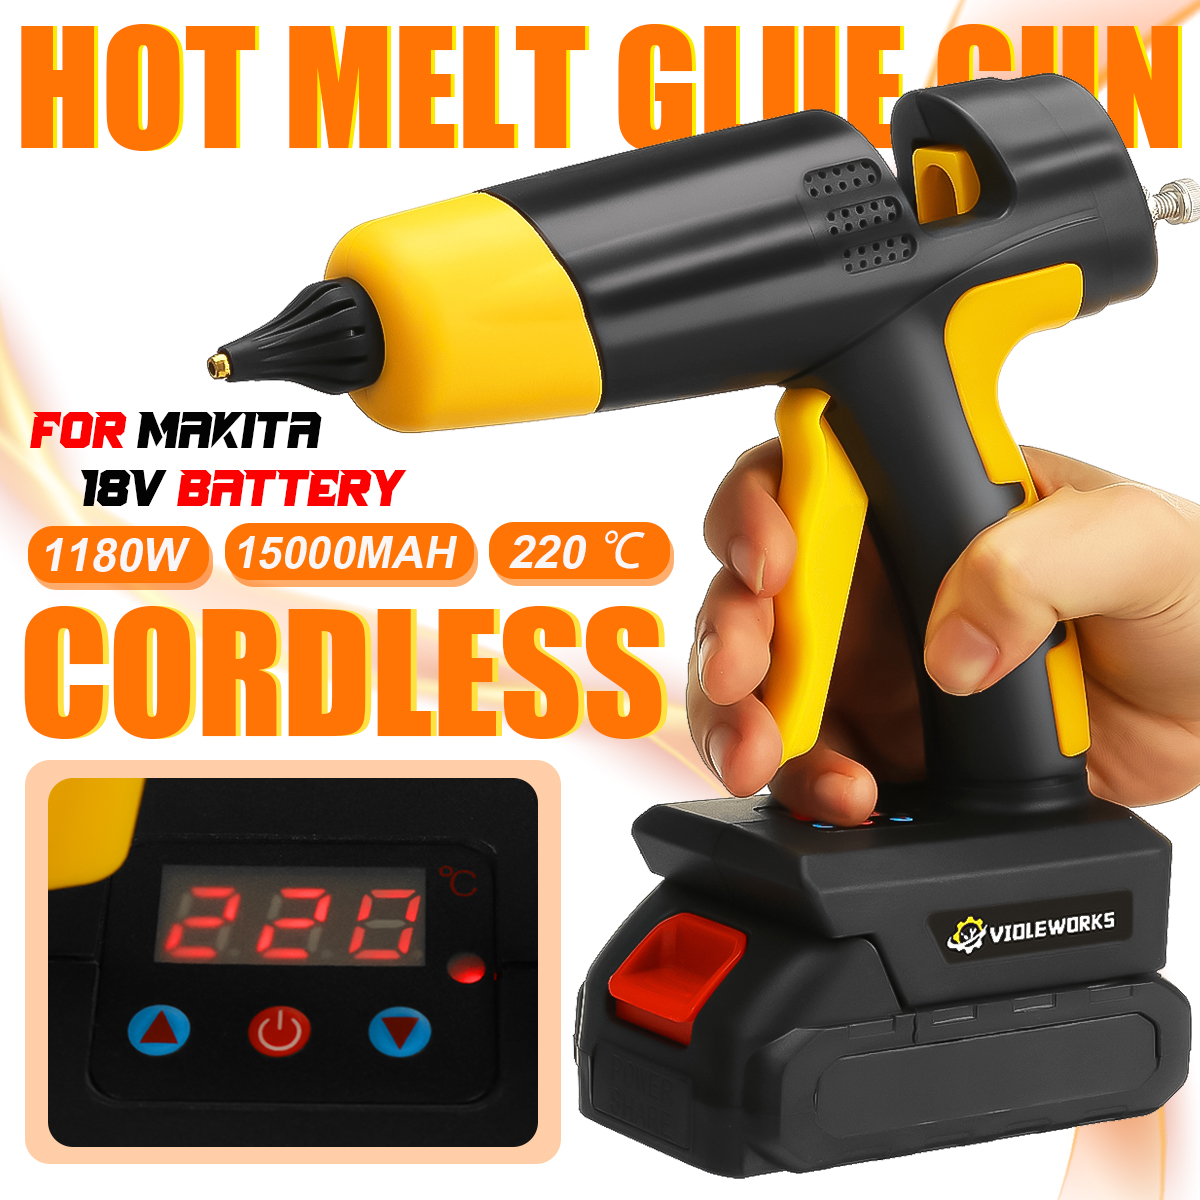 VIOLEWORKS-21V-Digital-Hot-Melt-Glue-Guns-Cordless-Rechargeable-Hot-Glue-Applicator-Home-Improvement-1915966-1